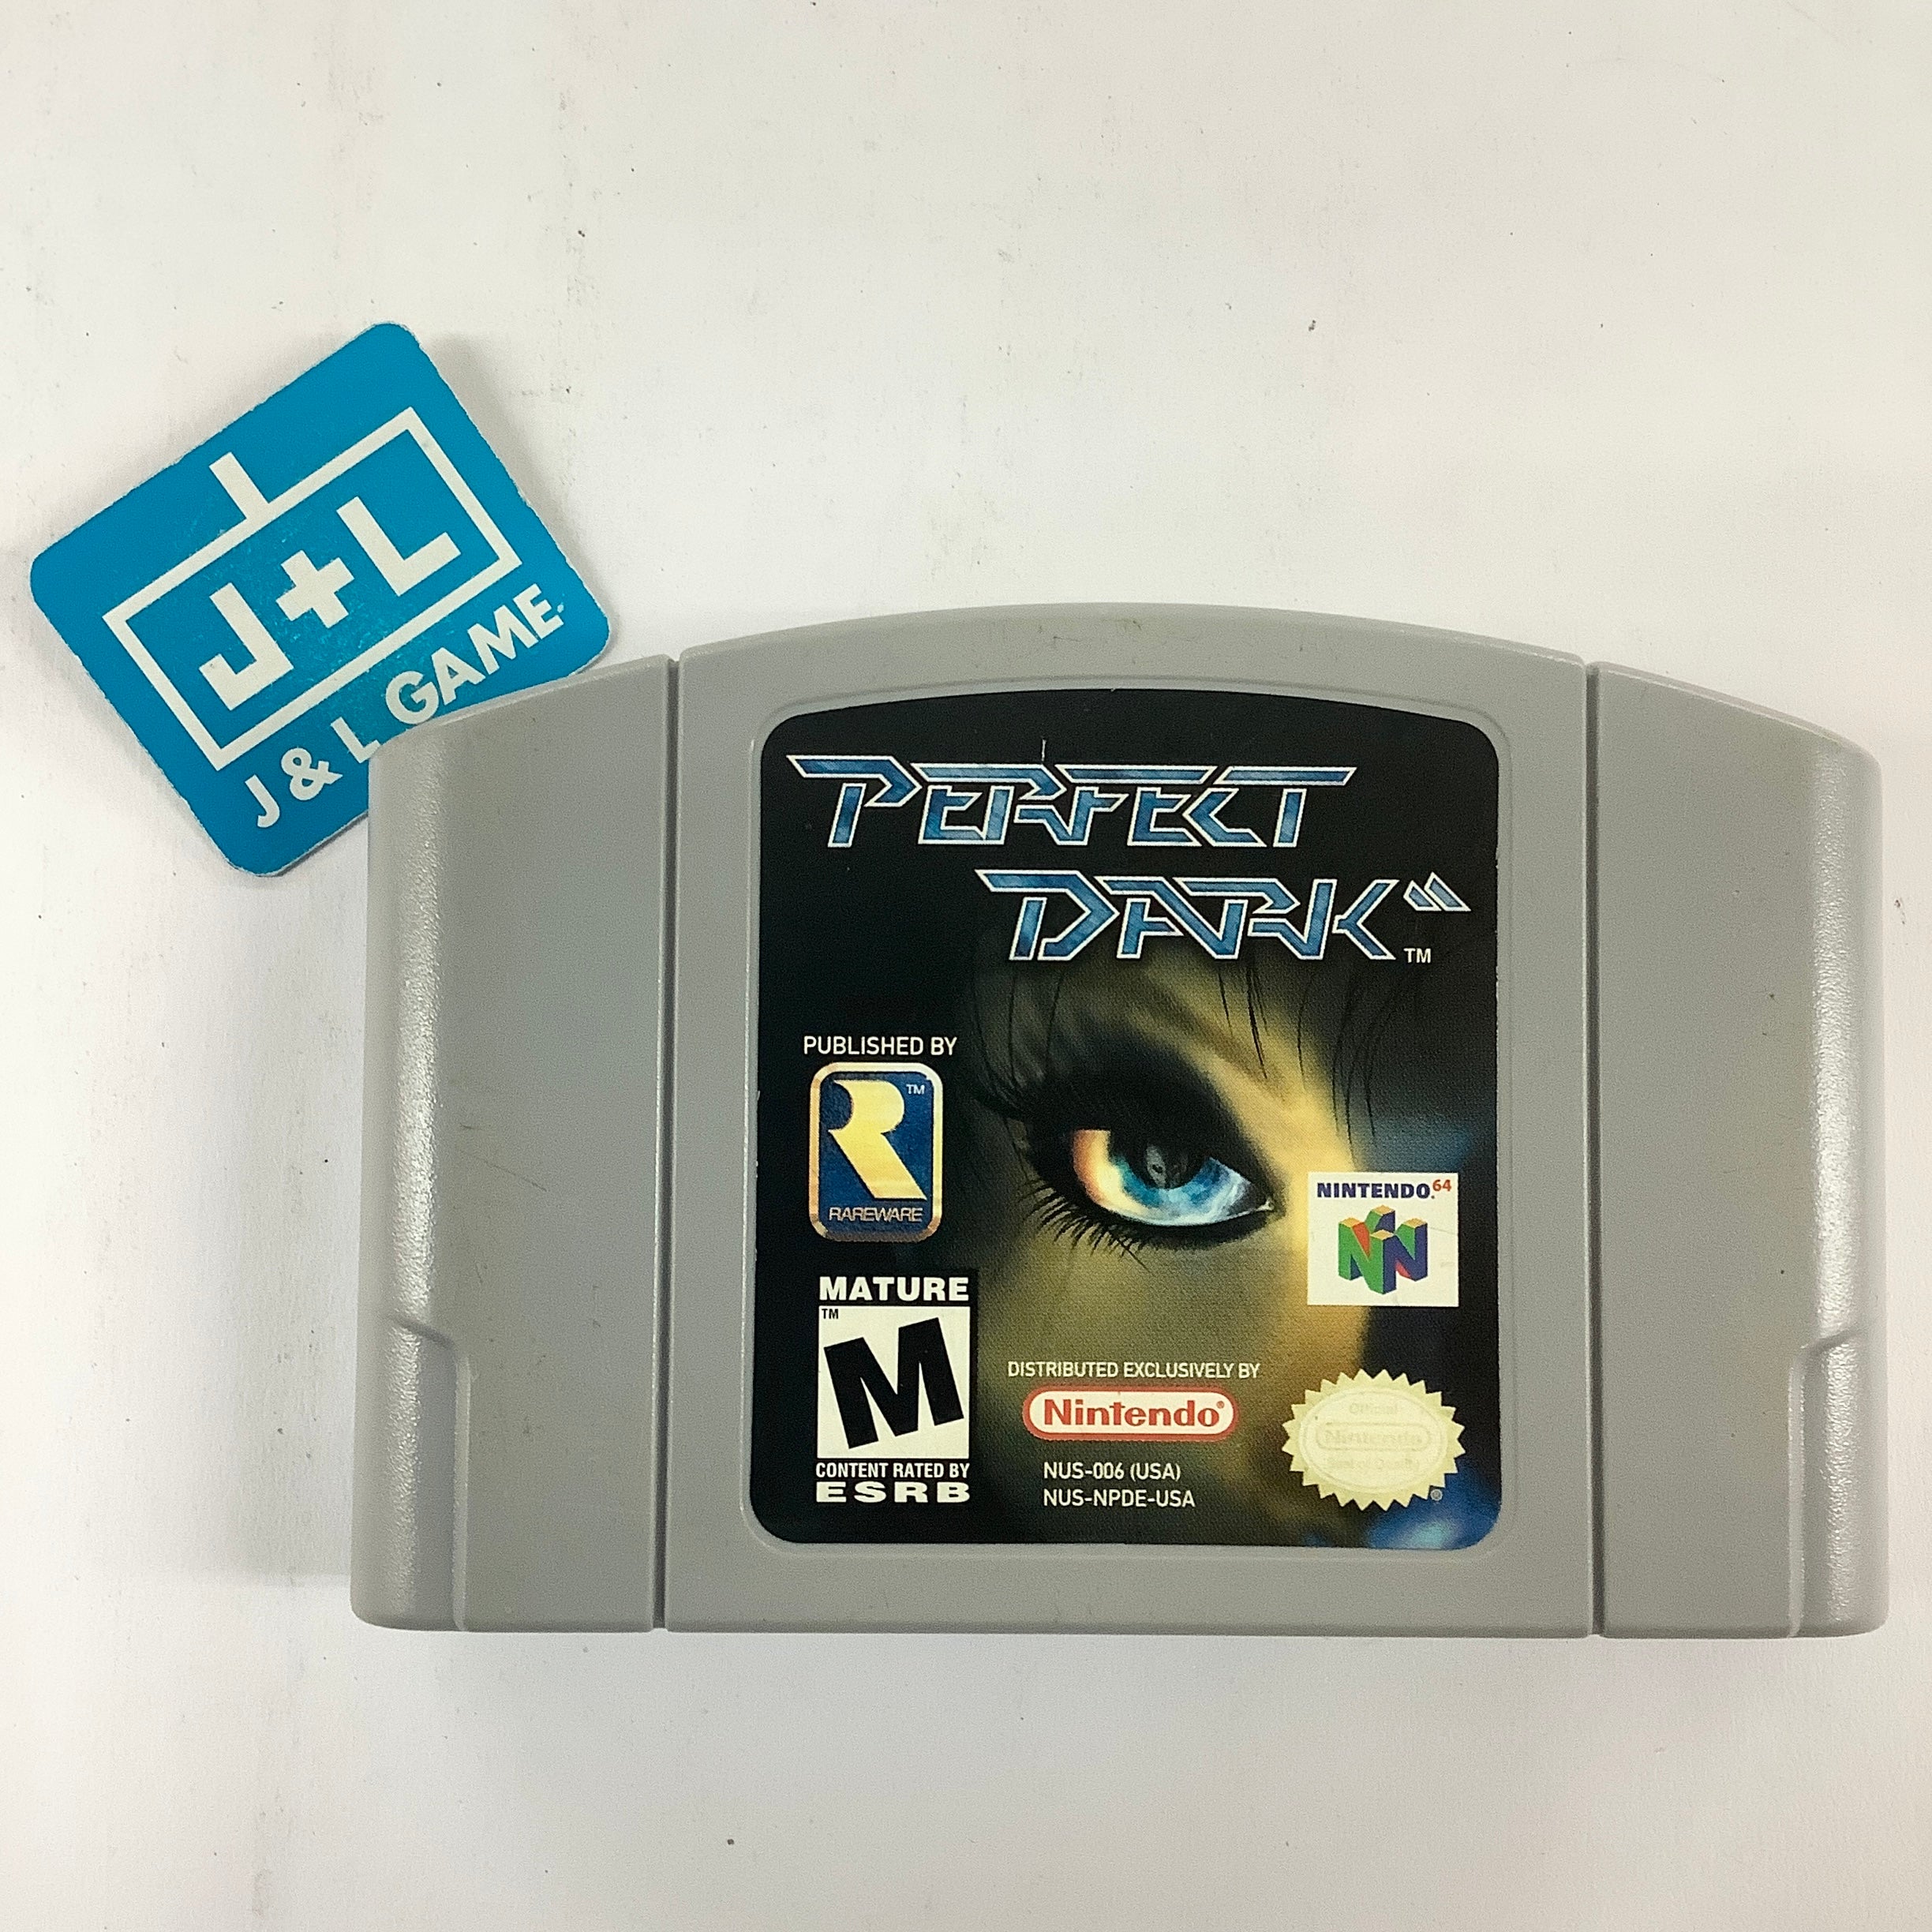 Perfect Dark - (N64) Nintendo 64 [Pre-Owned] Video Games Rare Ltd.   